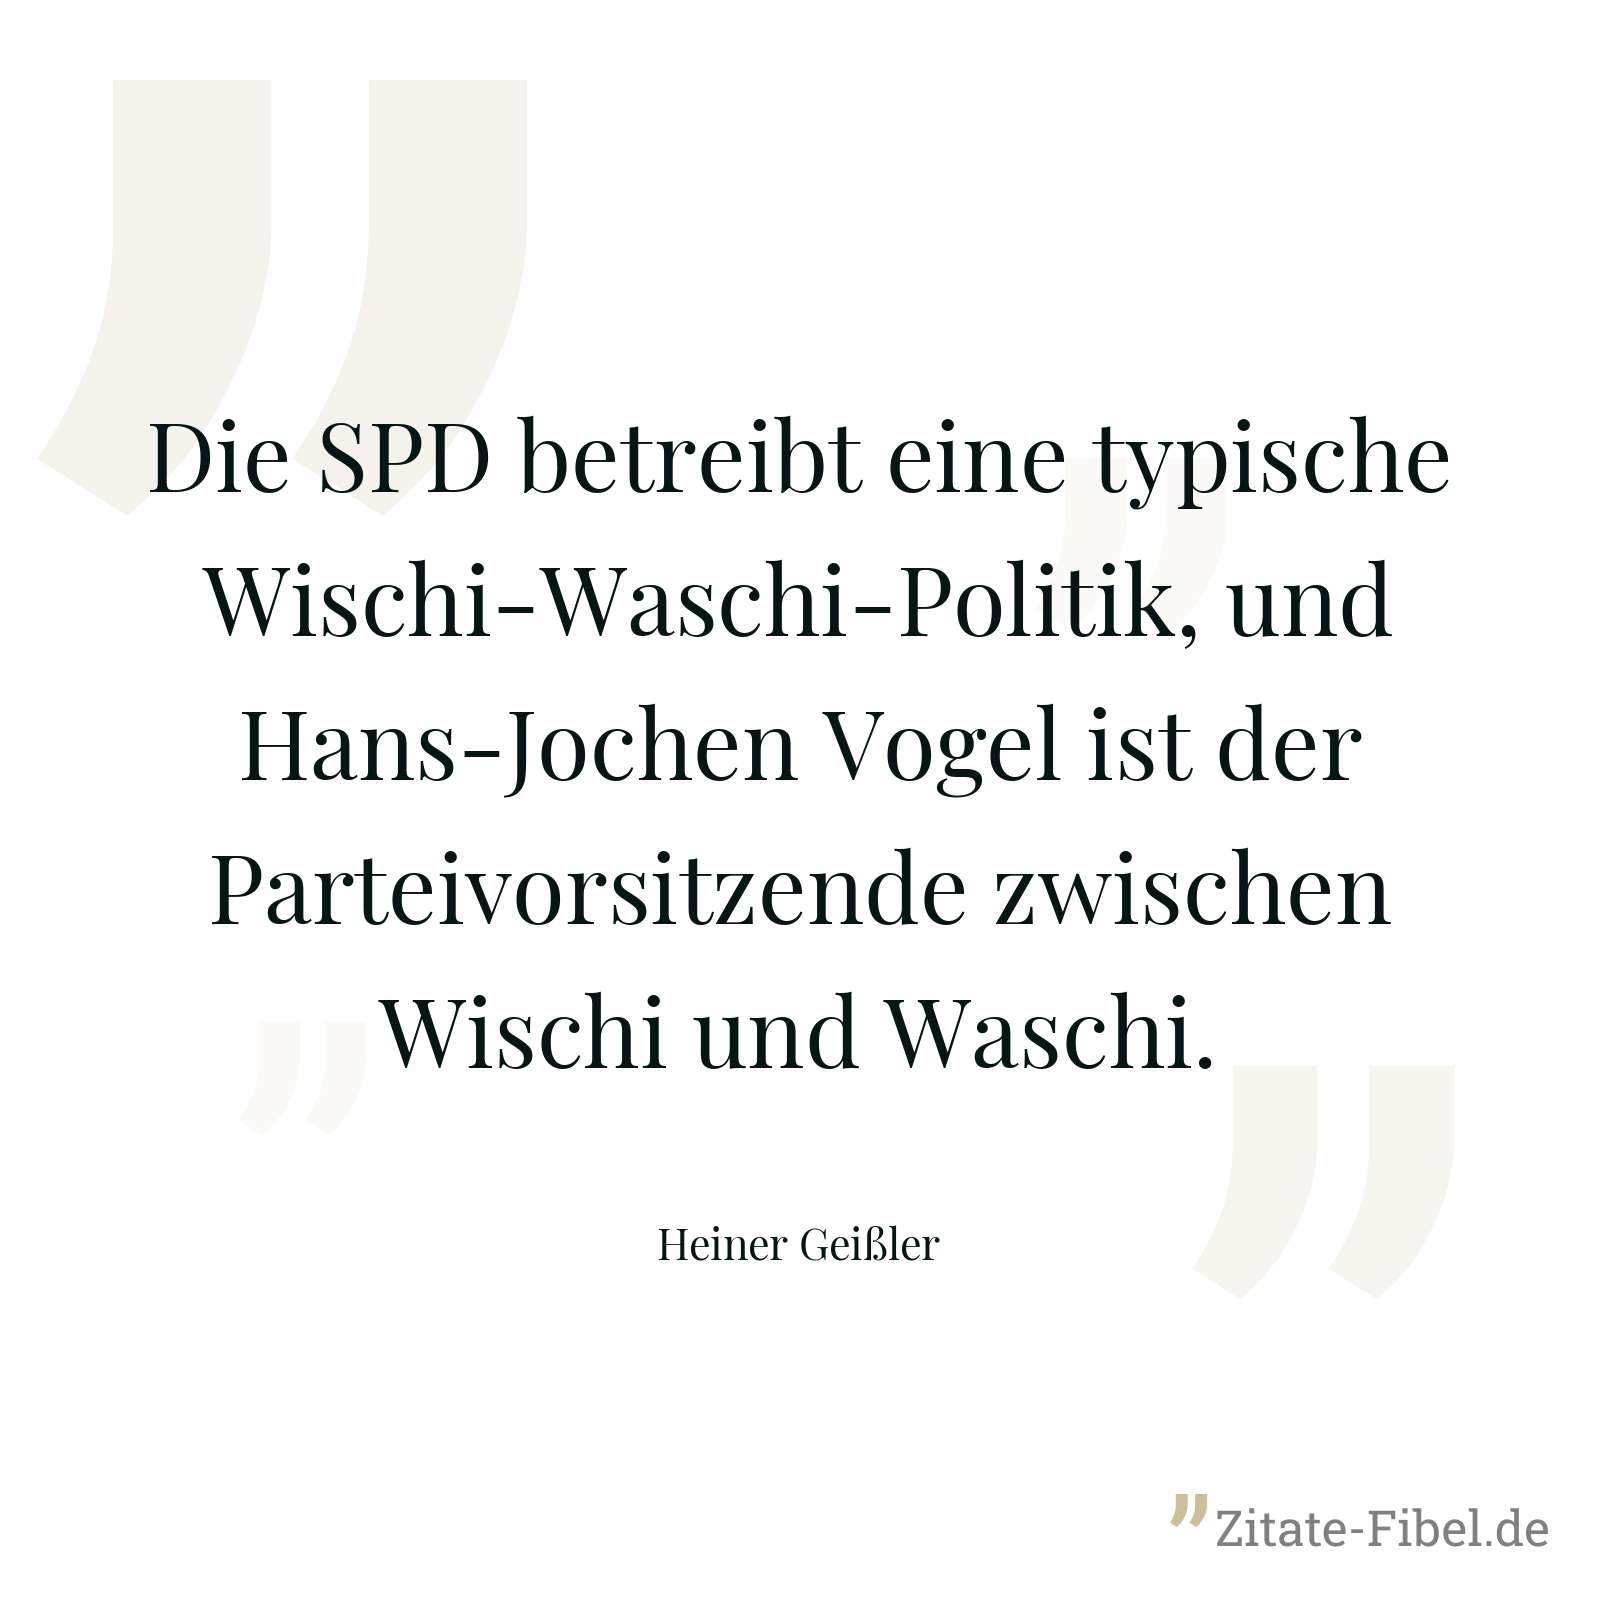 Die SPD betreibt eine typische Wischi-Waschi-Politik, und Hans-Jochen Vogel ist der Parteivorsitzende zwischen Wischi und Waschi. - Heiner Geißler